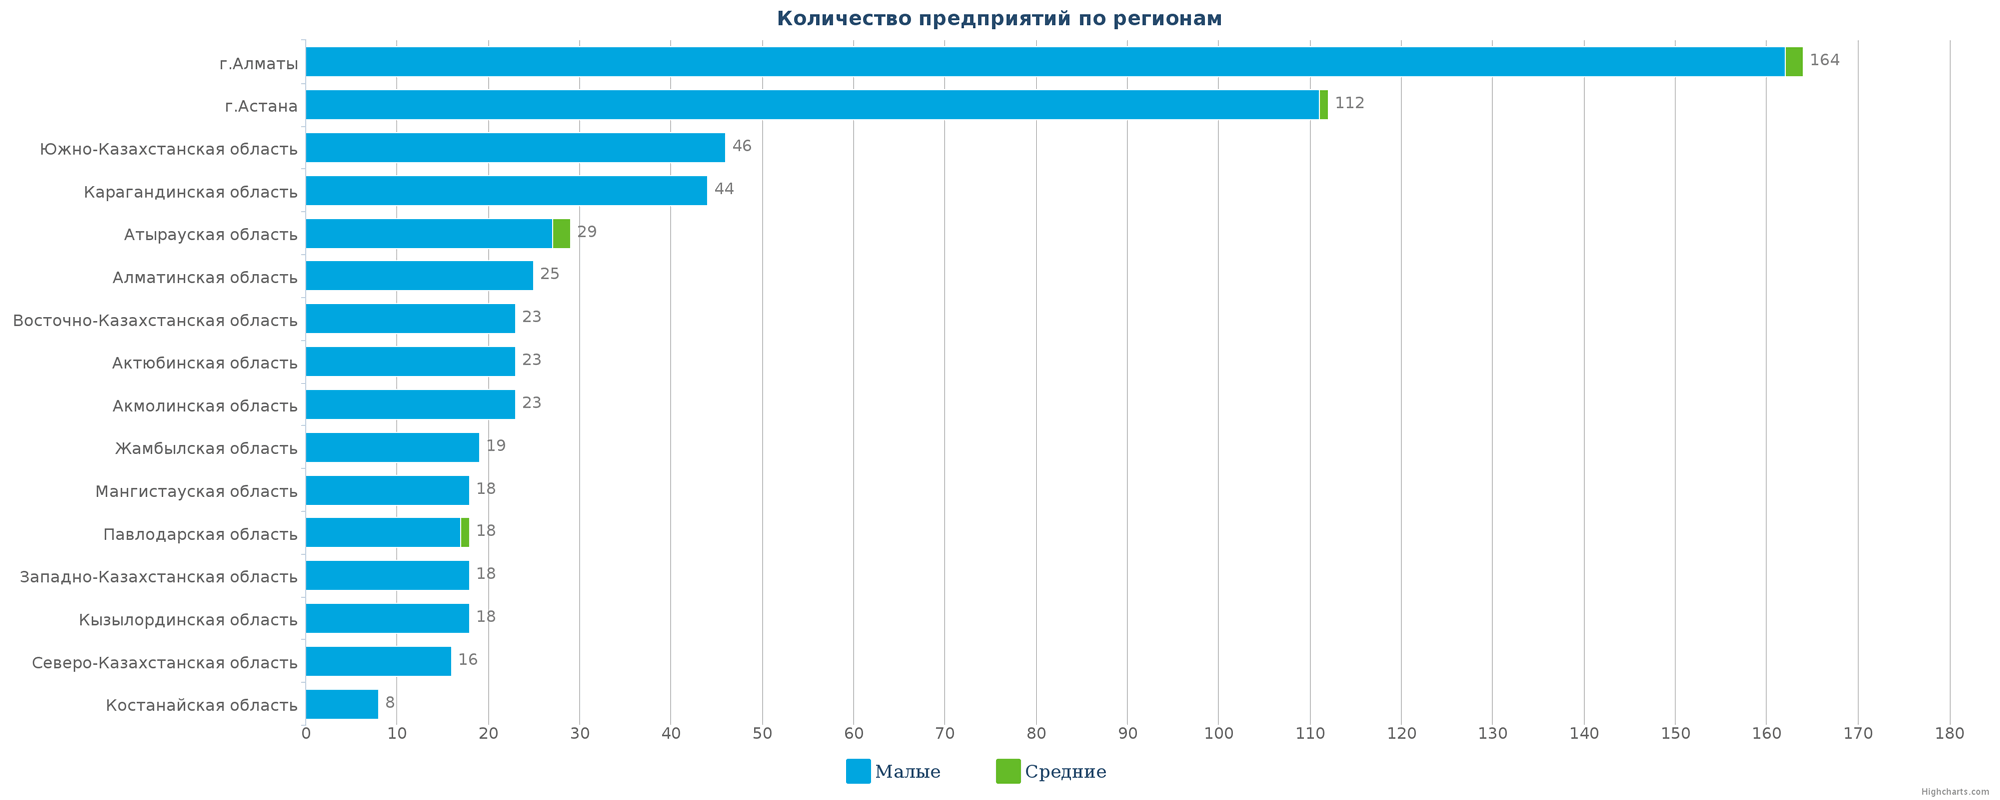 Количество новых юридических лиц в справочнике по регионам Казахстана